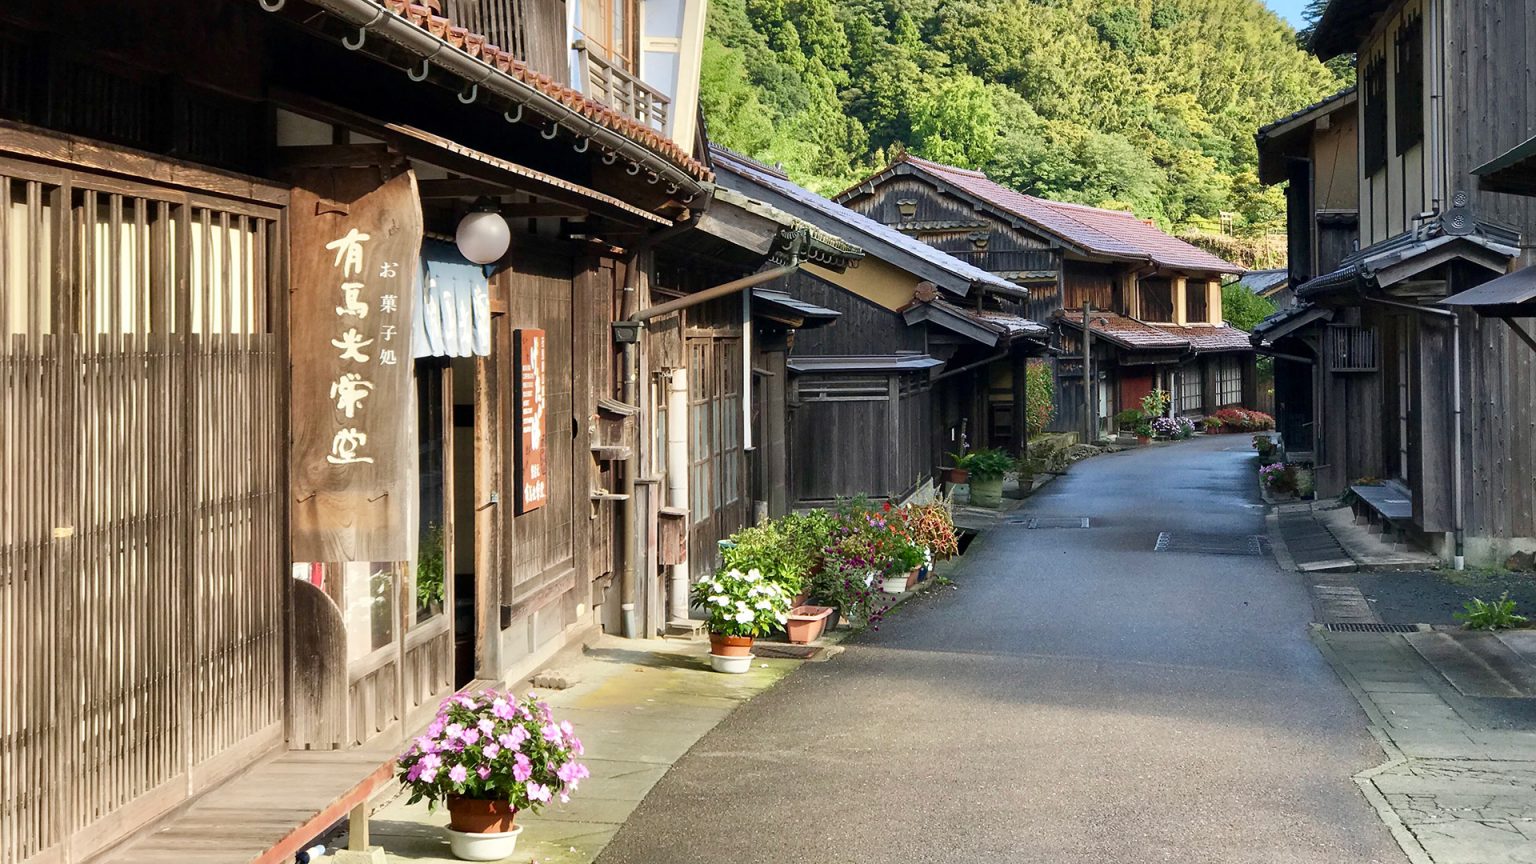 Rural Japan Travel Itinerary: Visiting Unexplored Japan